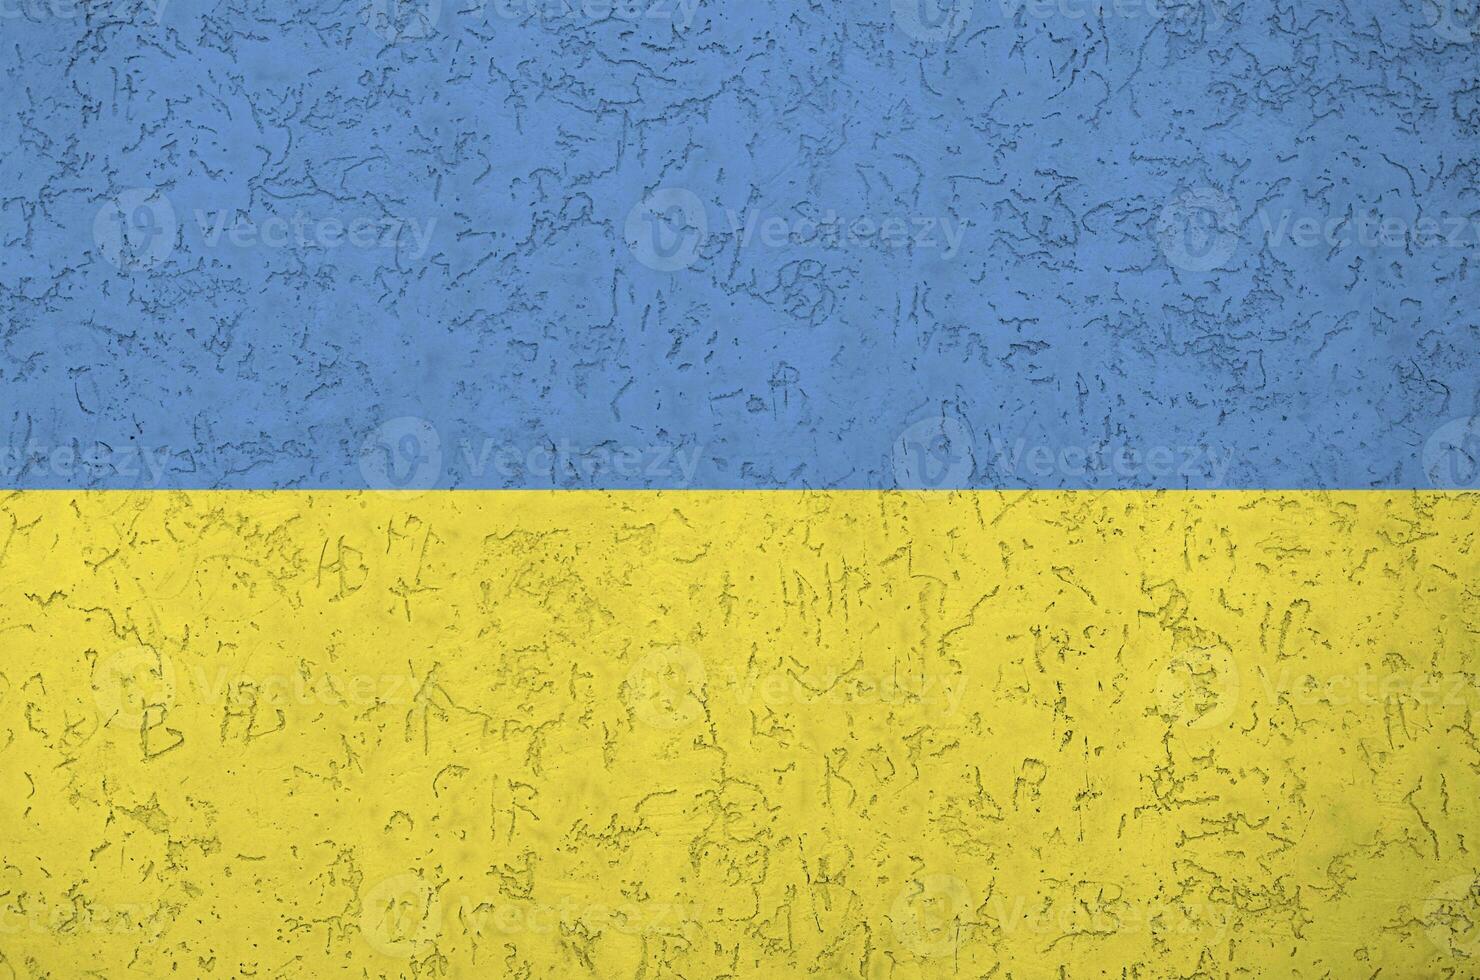 Ukraine Flagge abgebildet im hell Farbe Farben auf alt Linderung Verputzen Mauer. texturiert Banner auf Rau Hintergrund foto